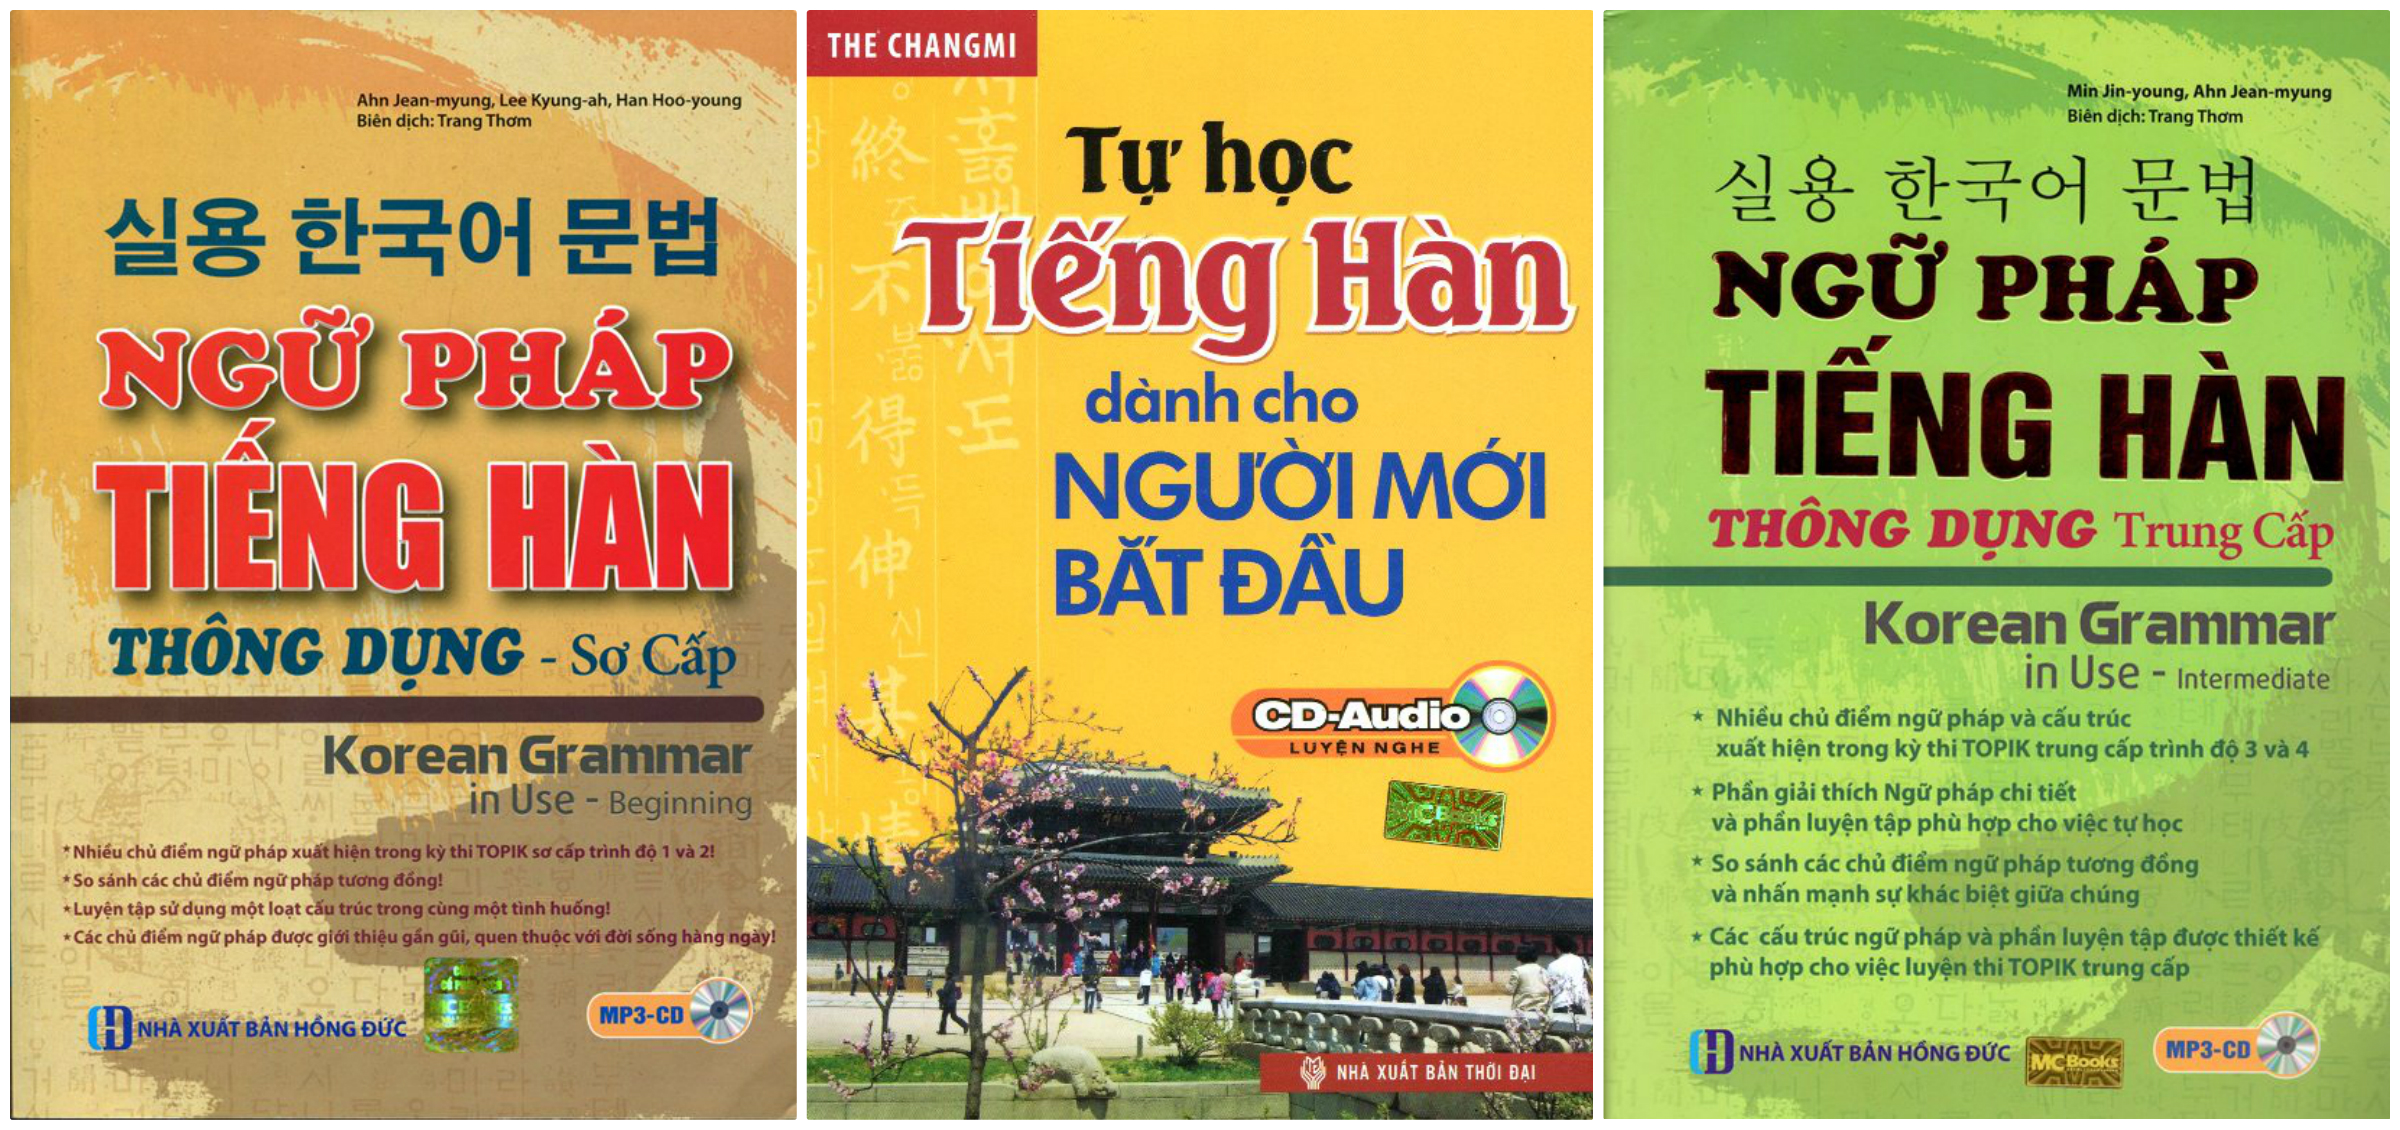 Học tiếng Hàn trực tuyến lần đàu tại Việt Nam